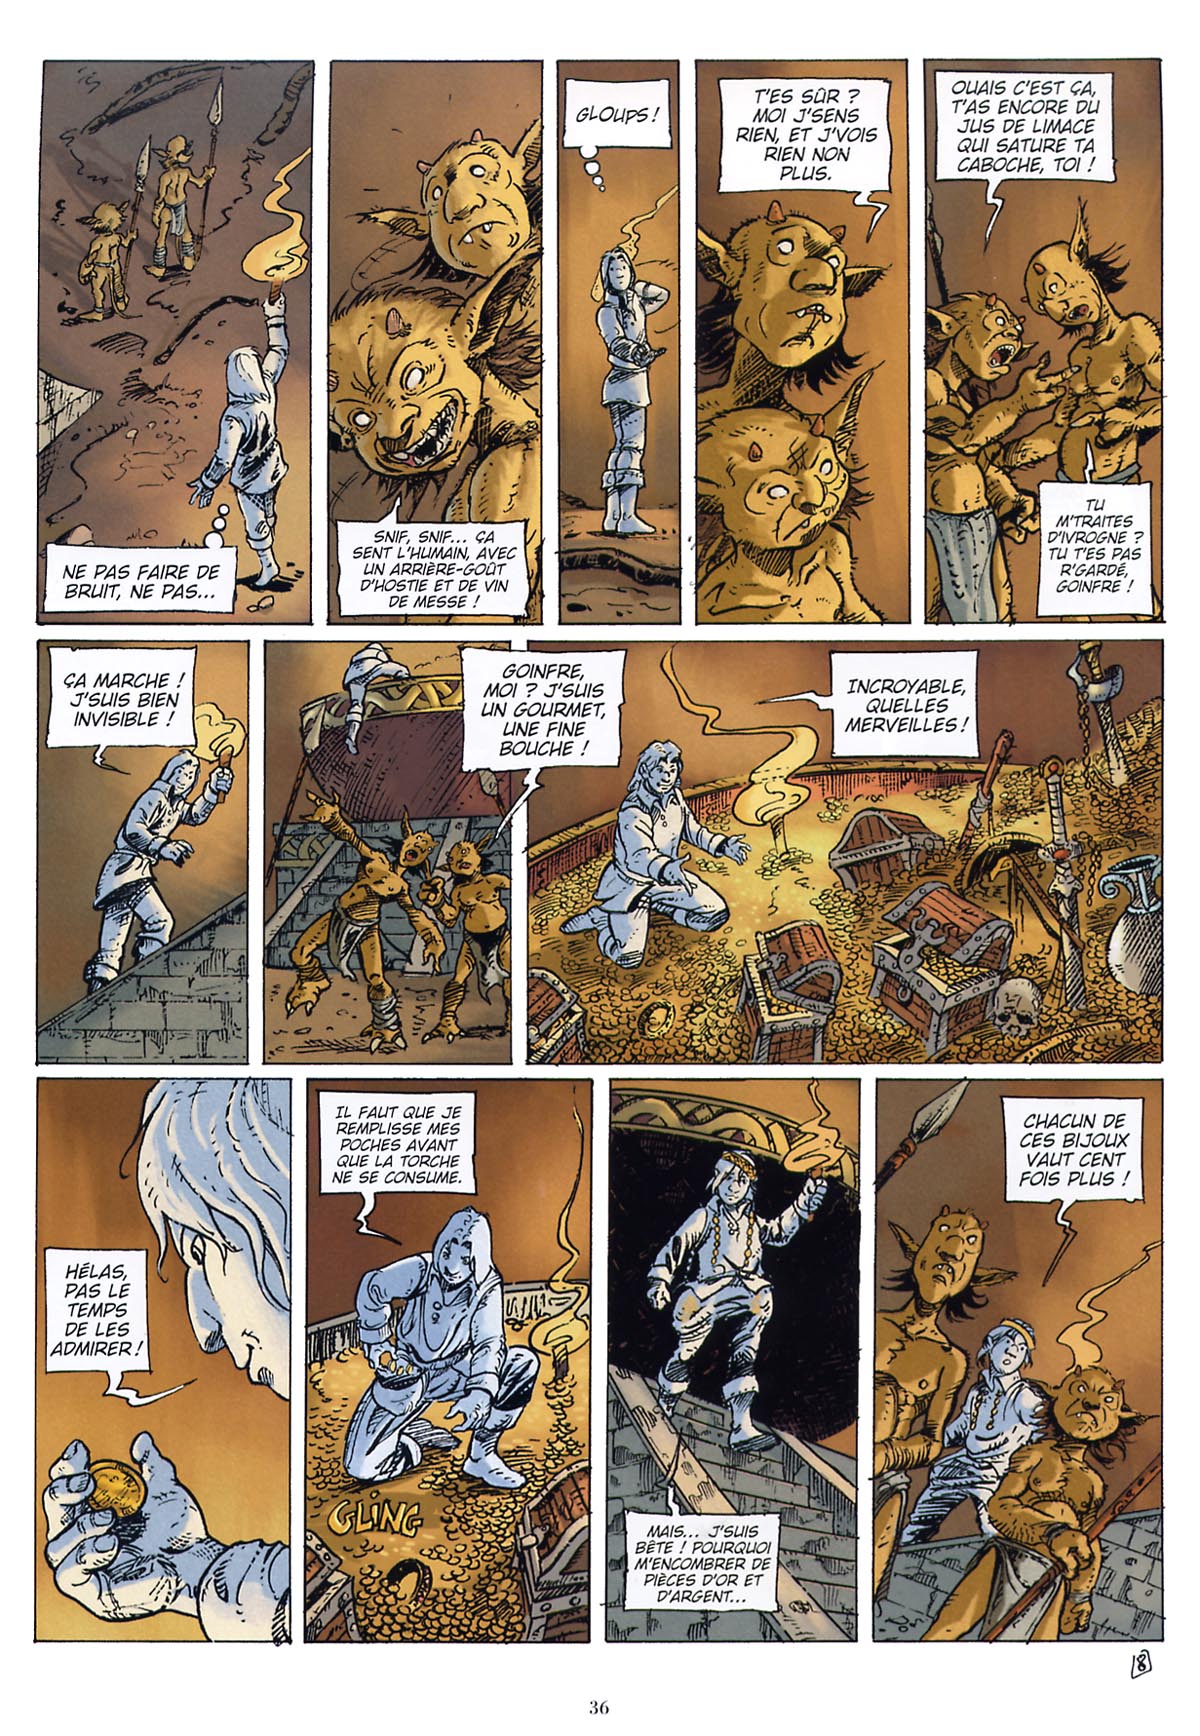 Les contes du Korrigan - Livre 1 - Les trésors enfouis numero d'image 37